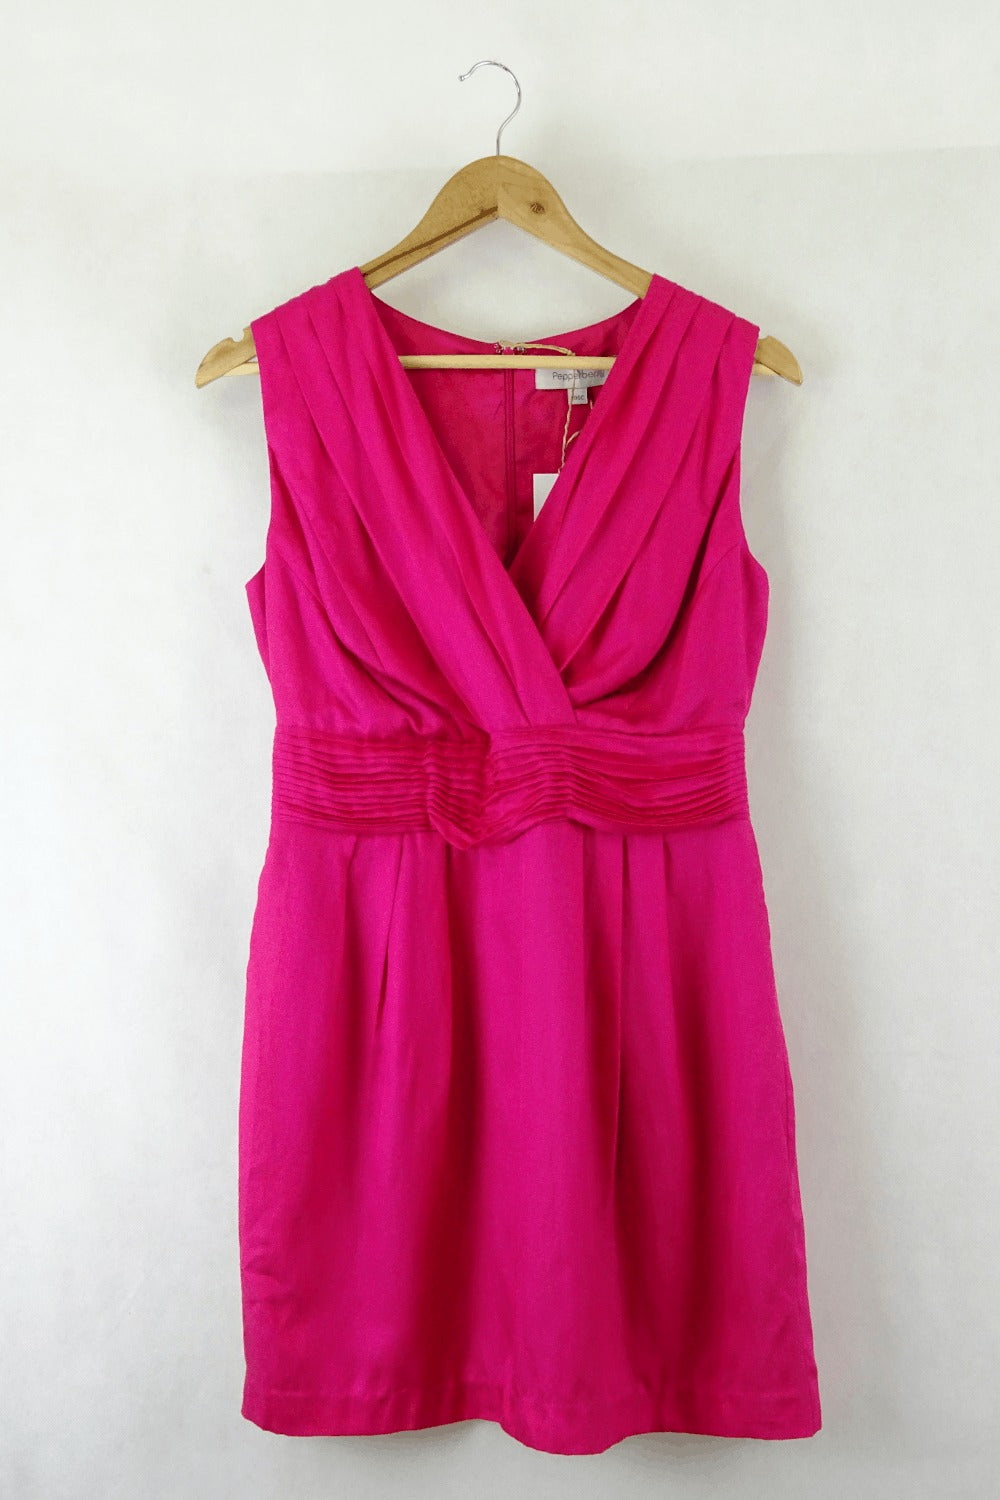 Pepperberry Pink Dress 10